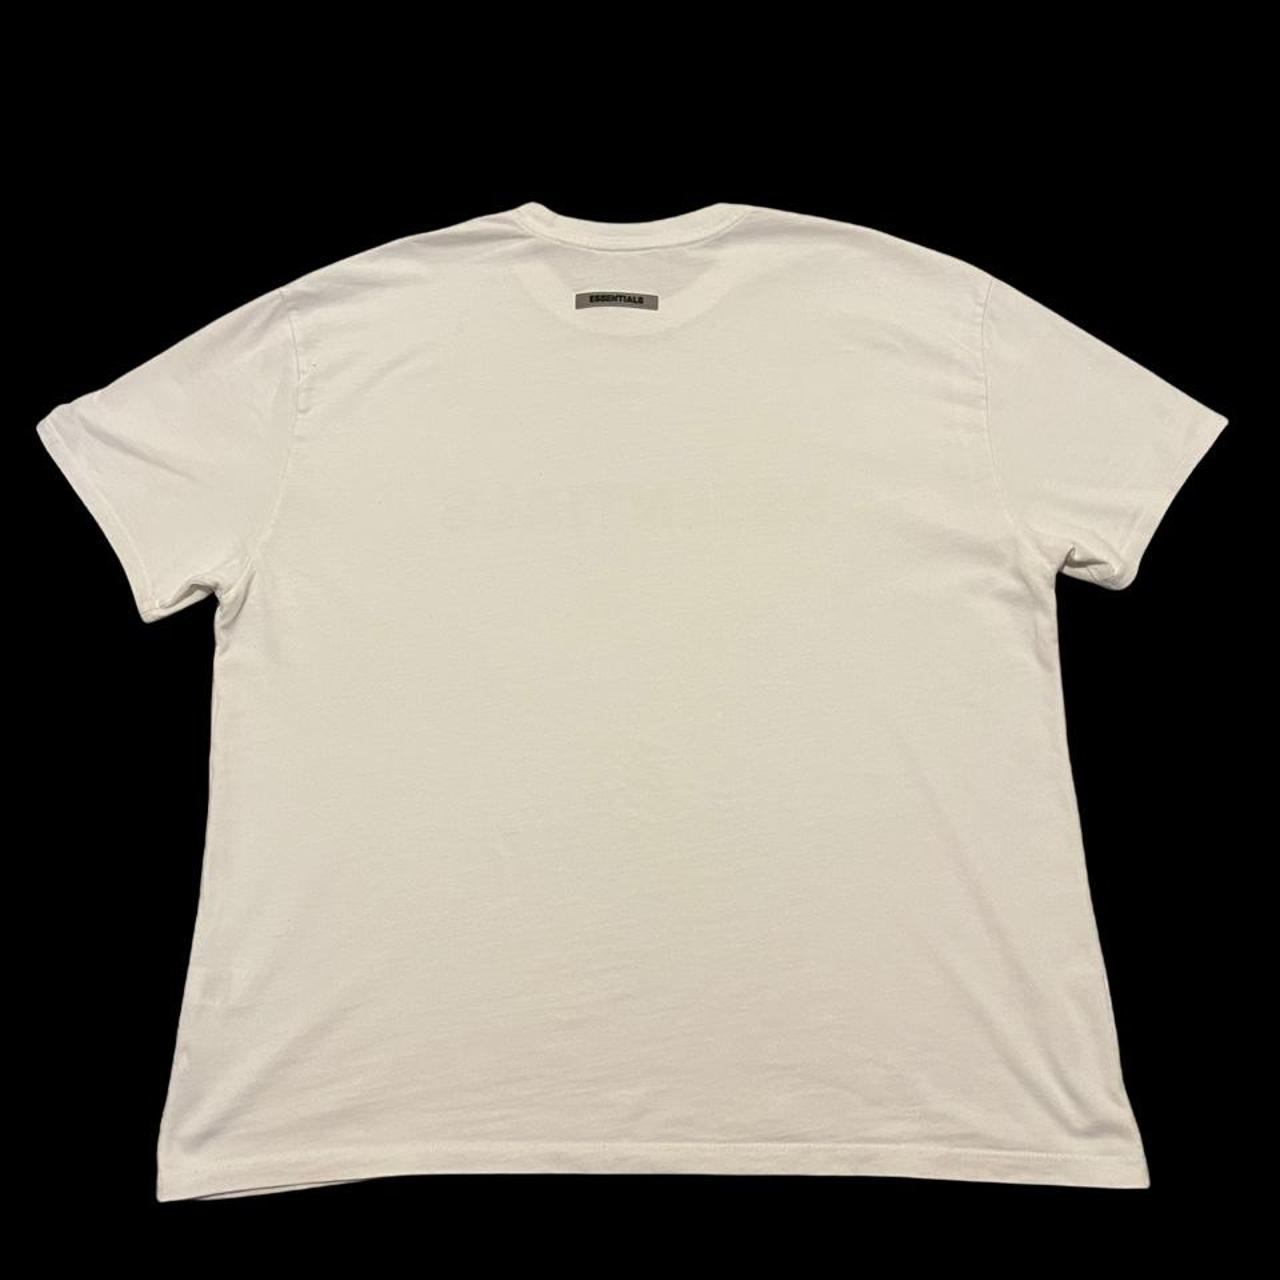 Fear of God Men's White T-shirt (3)